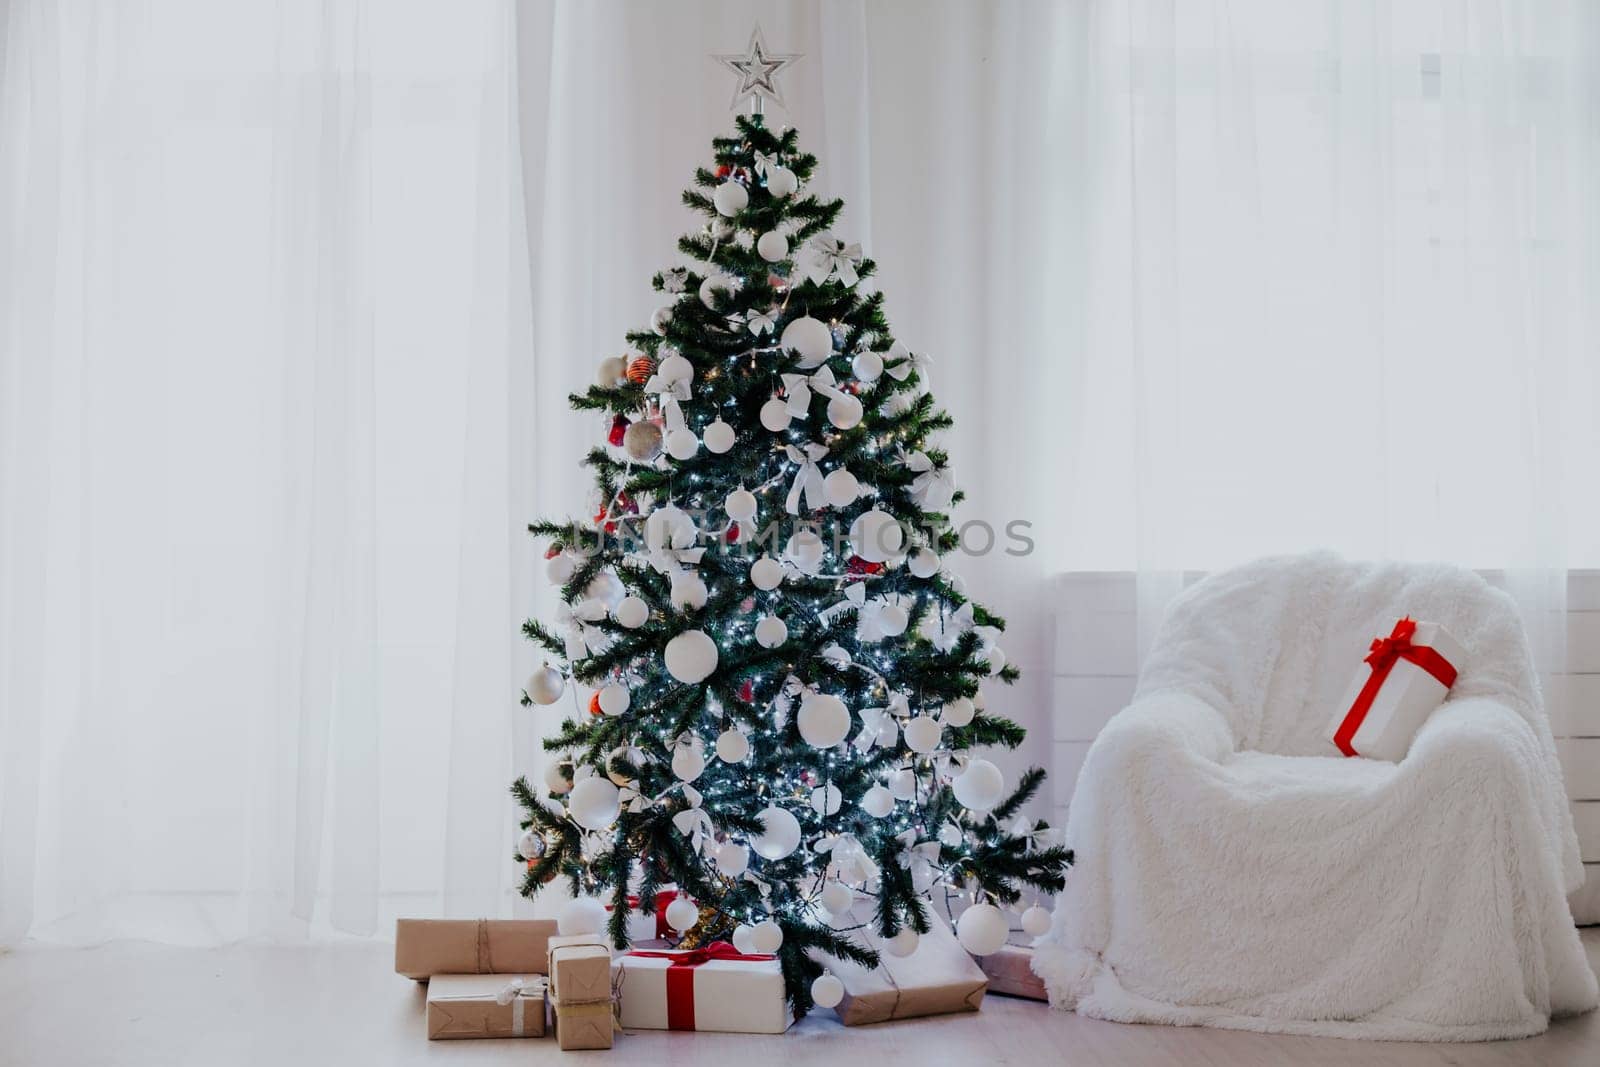 Christmas holidays with Christmas tree decor gifts